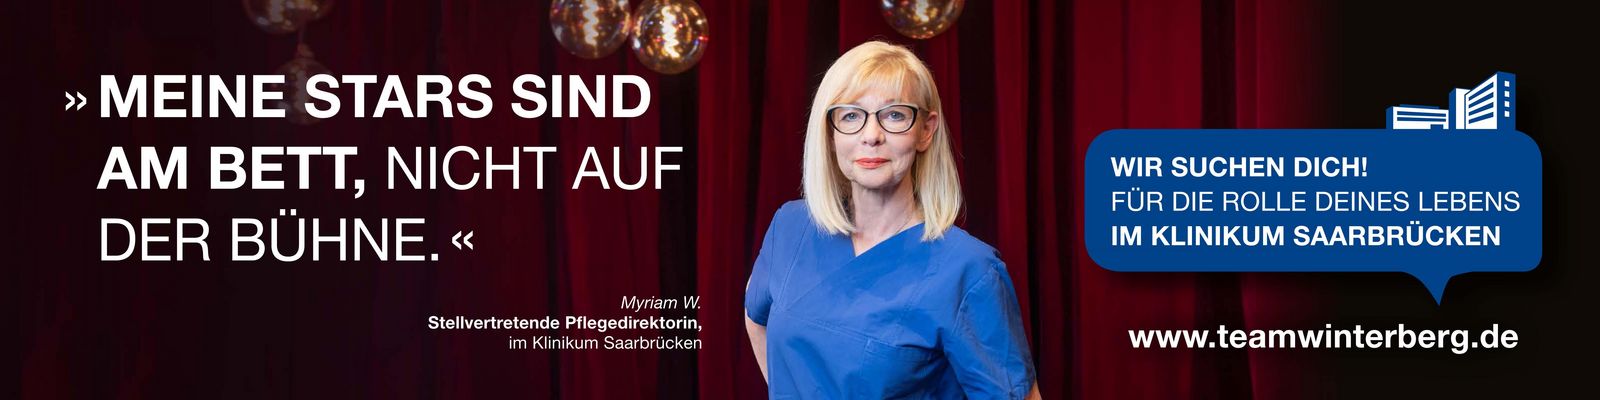 Stellvertretende Pflegedirektorin Myriam W. im Theater: Die Rolle Deines Lebens im Klinikum Saarbrücken Pflegekampagne_MyriamW.jpg